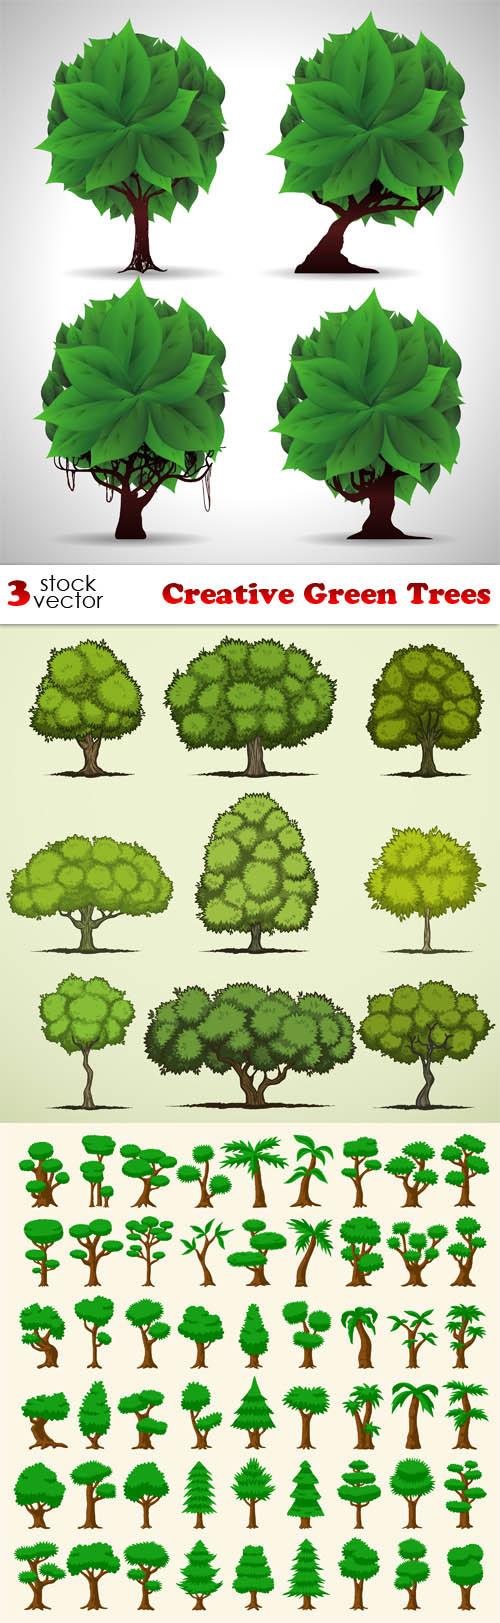 Vectors - Creative Green Trees